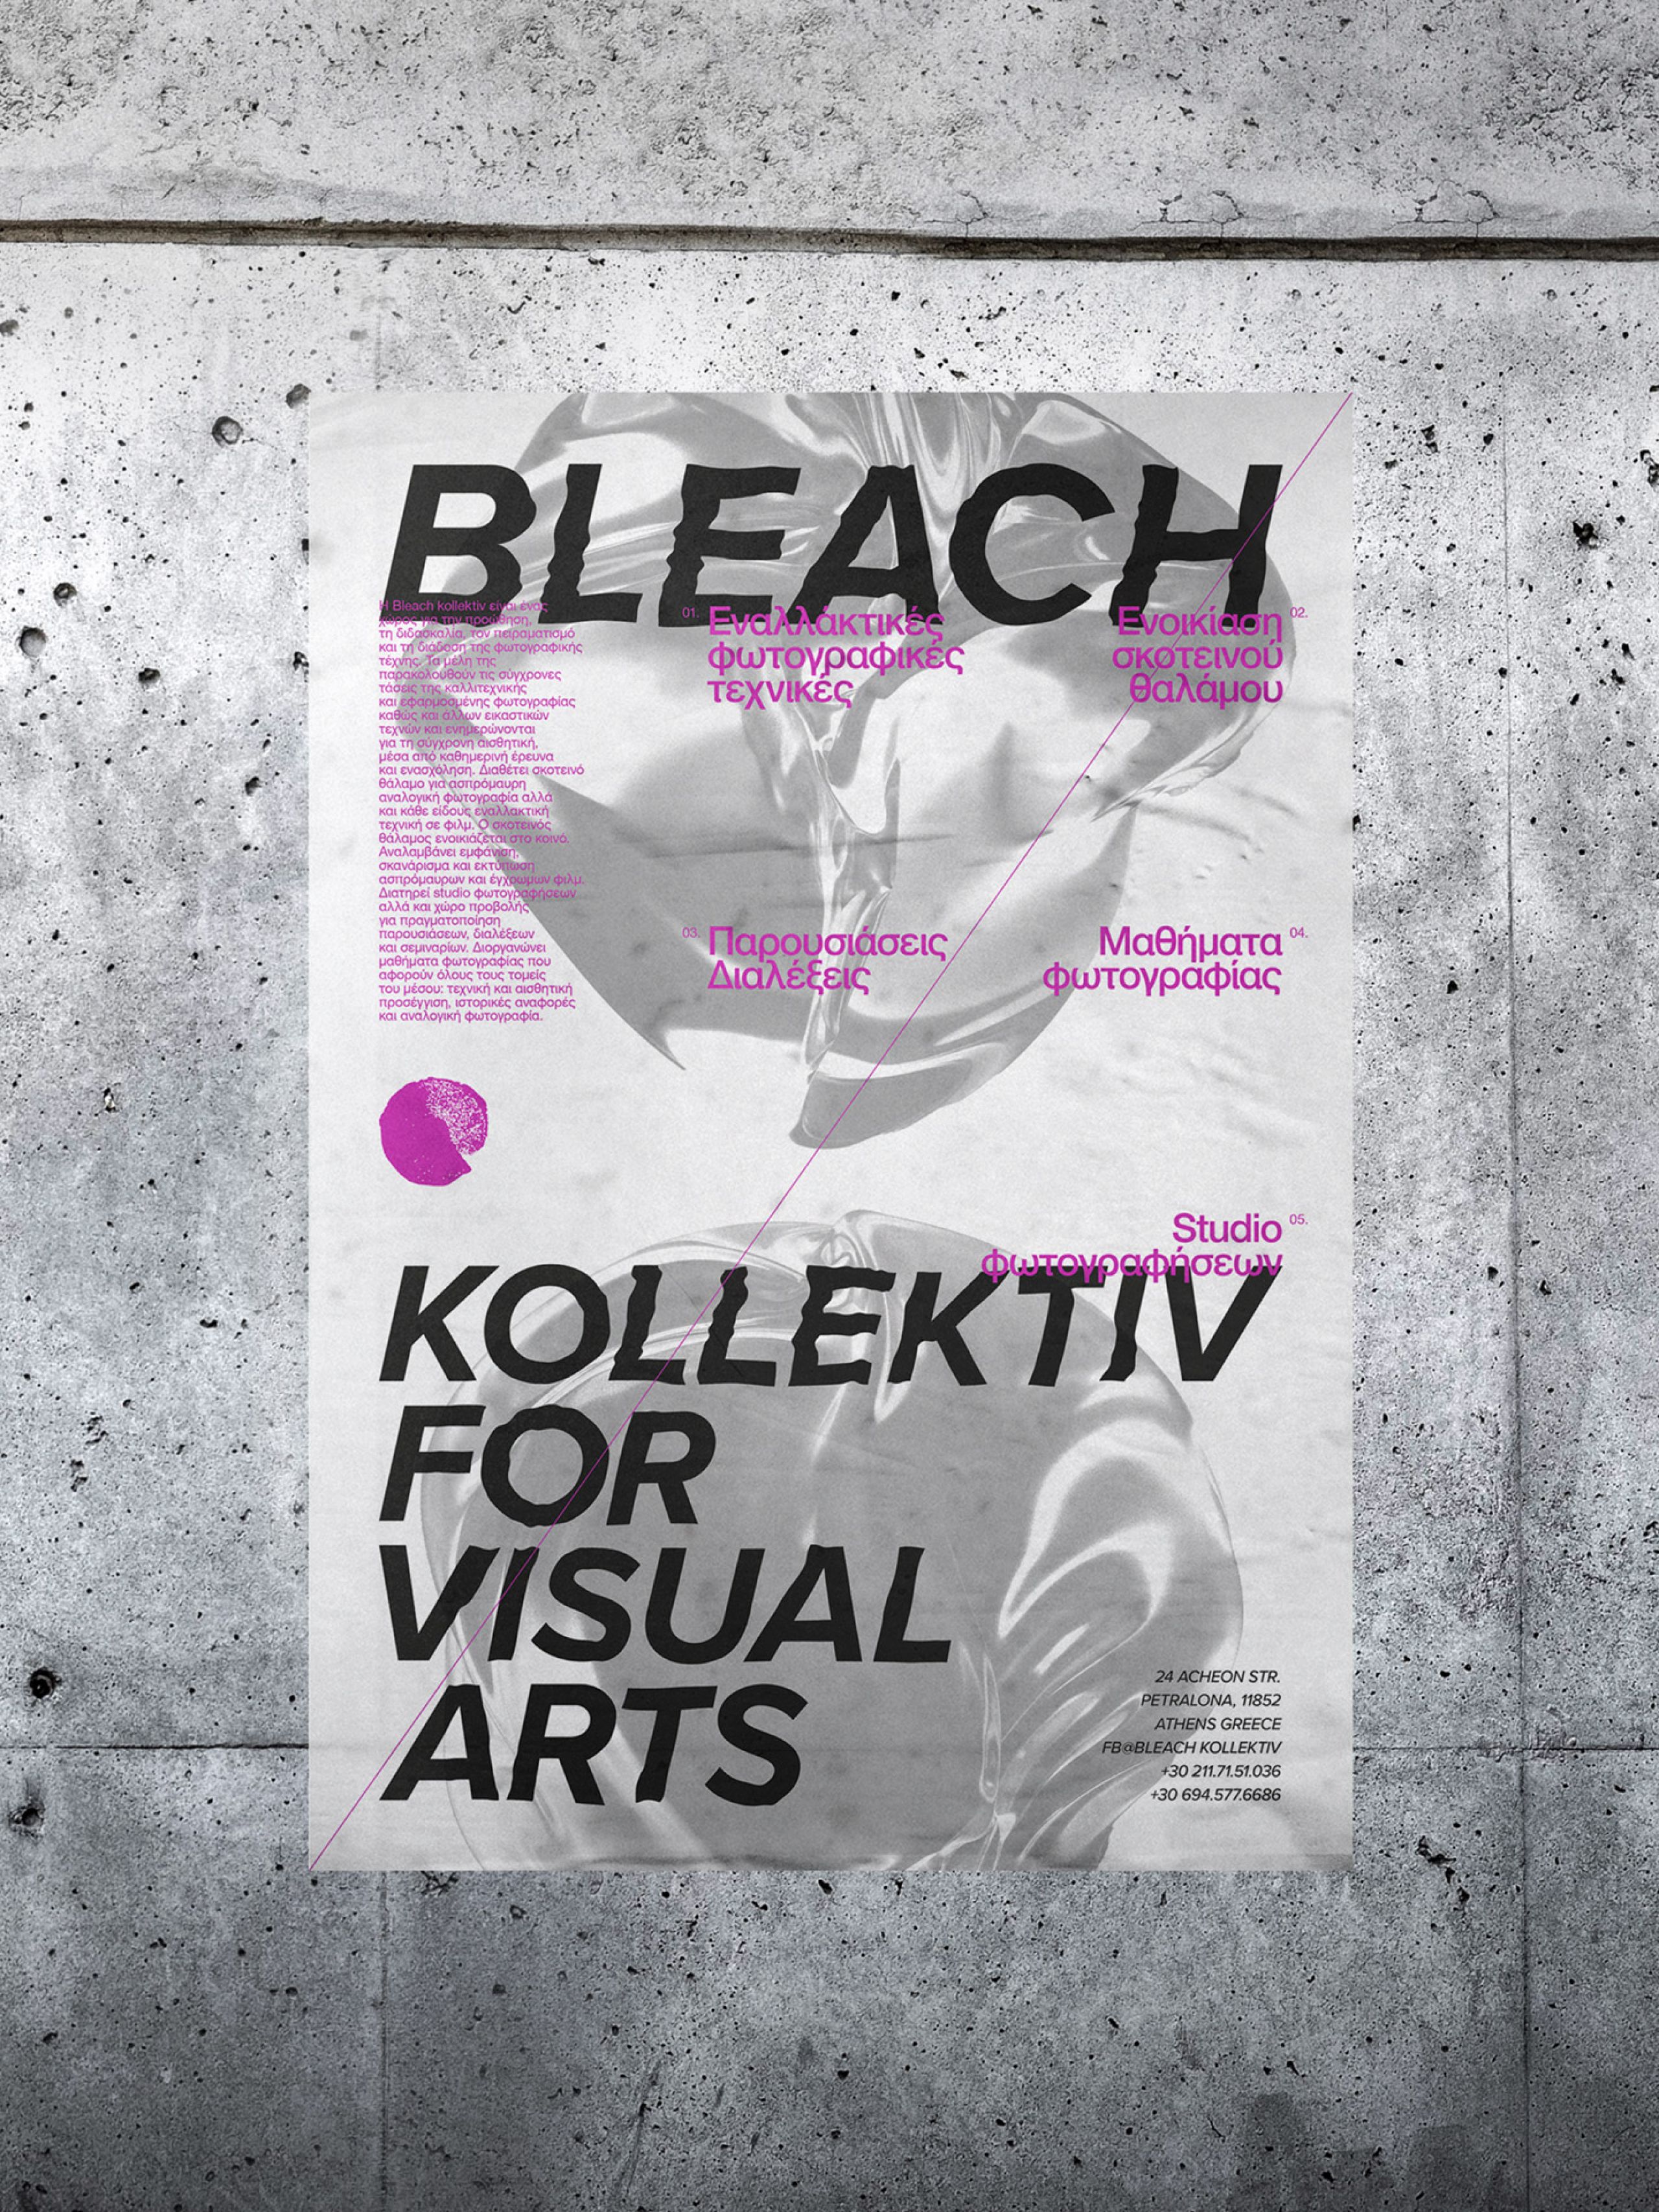 bleach-poster-series-001